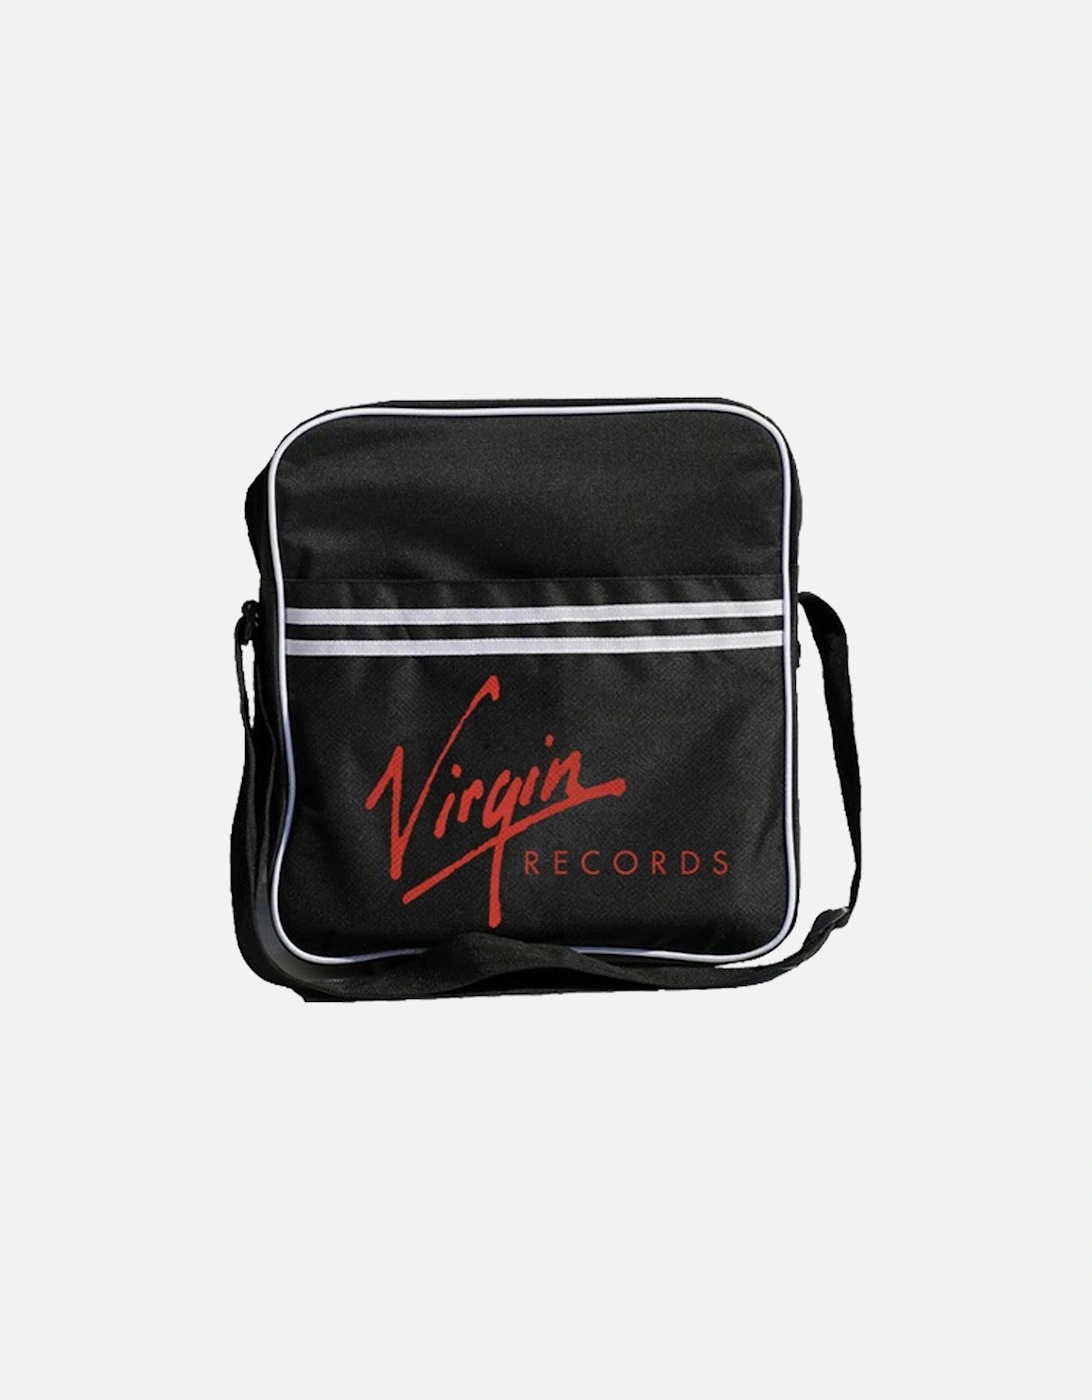 Virgin Records Zip Top Messenger Bag, 2 of 1